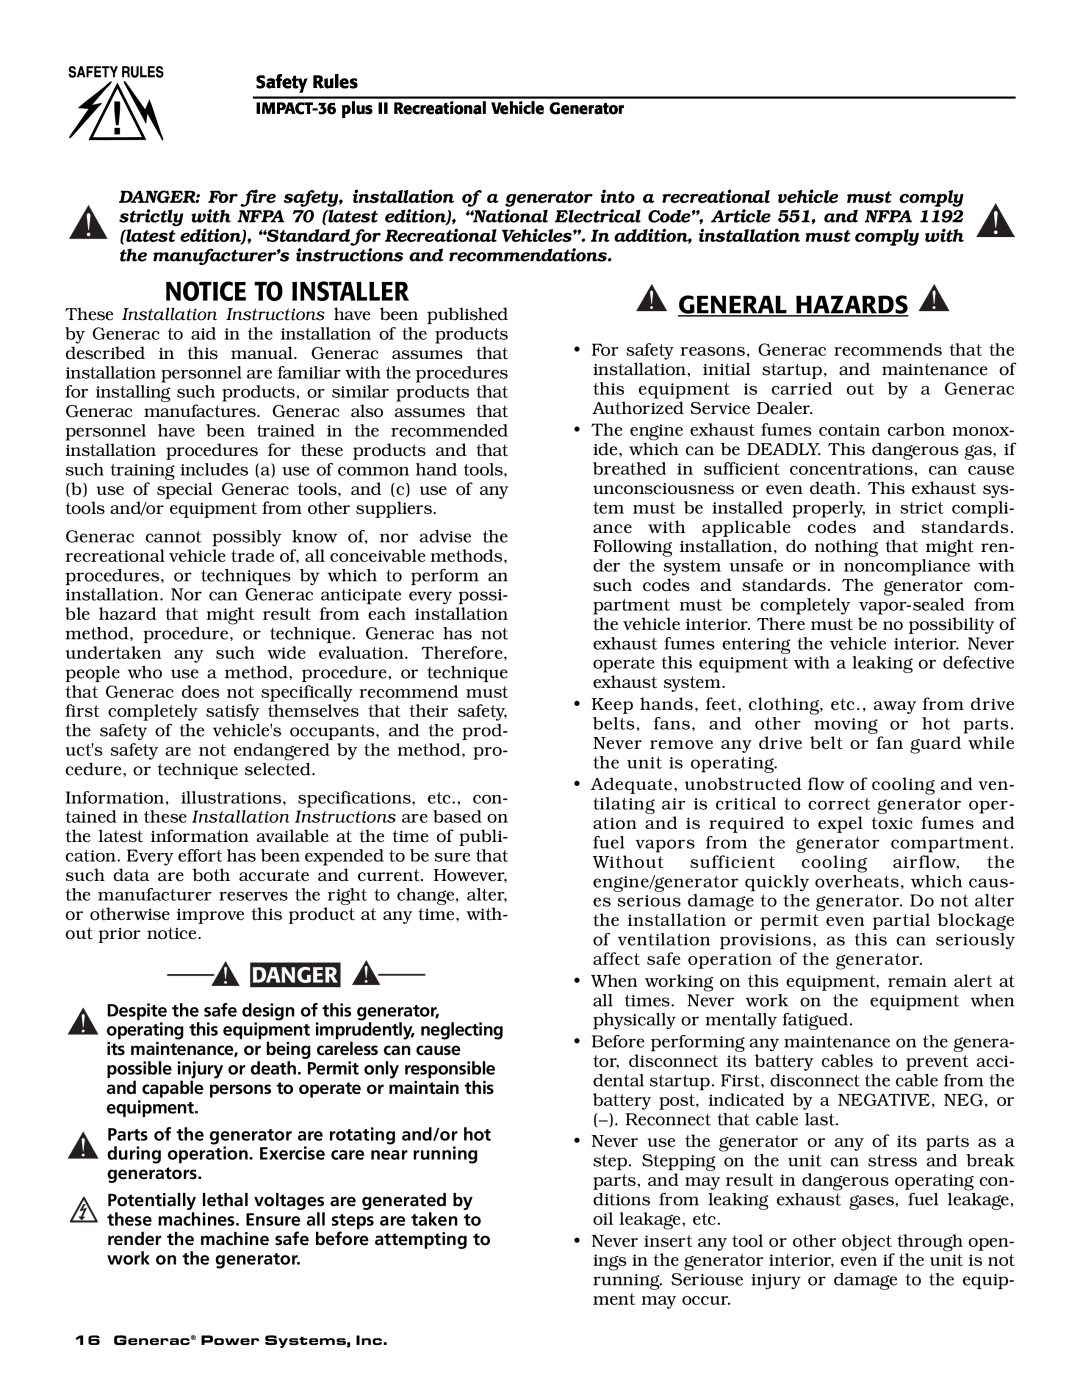 Generac 00941-3 owner manual Notice To Installer, General Hazards, Danger 